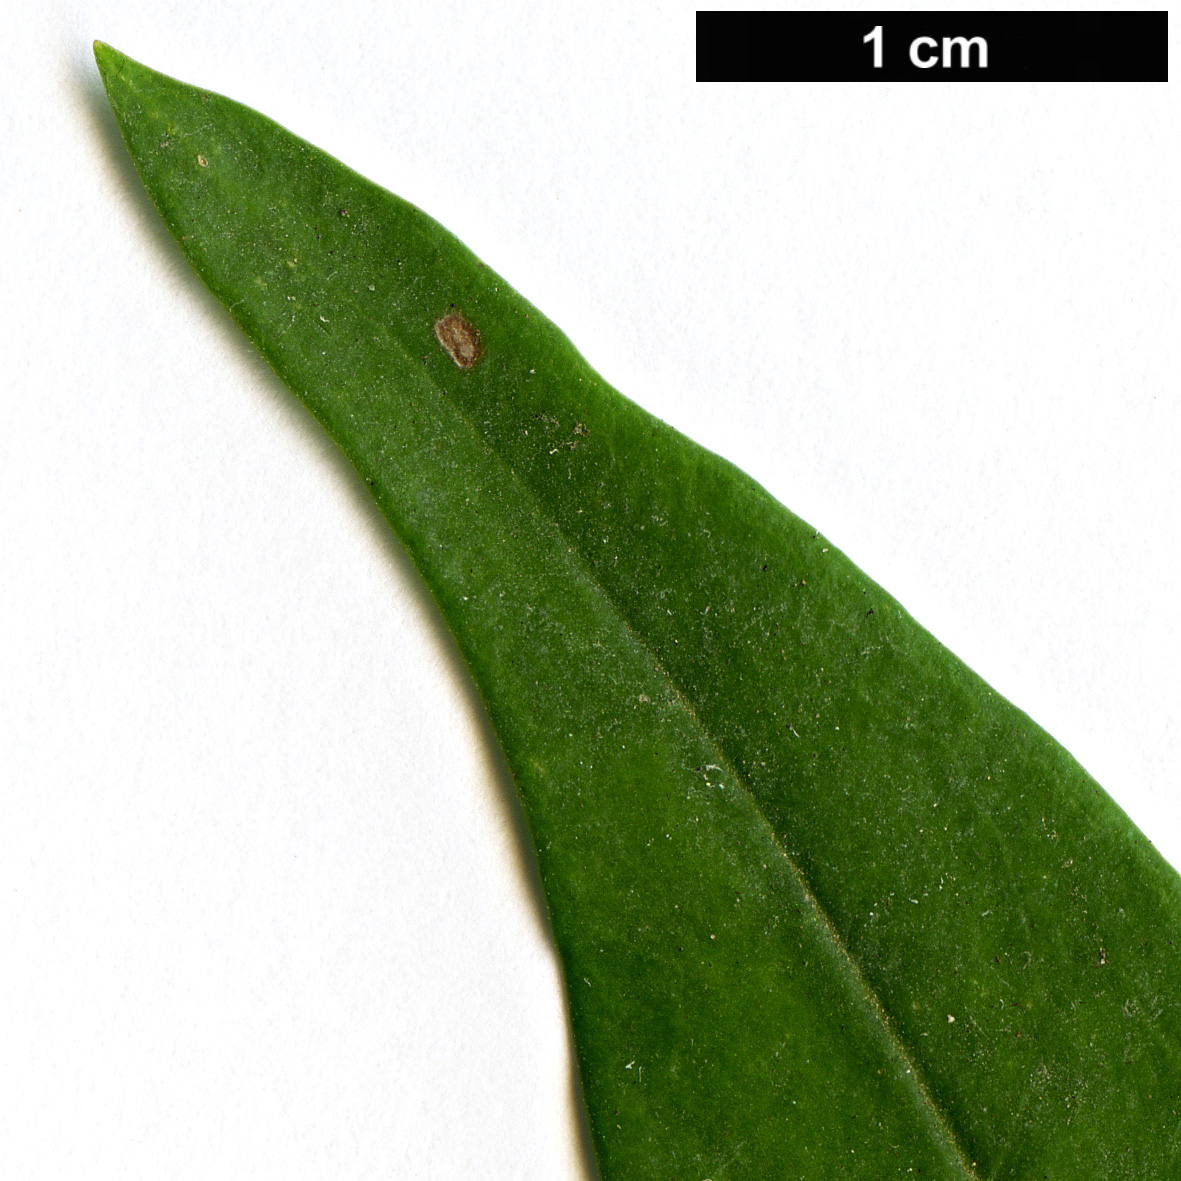 High resolution image: Family: Oleaceae - Genus: Jasminum - Taxon: odoratissimum